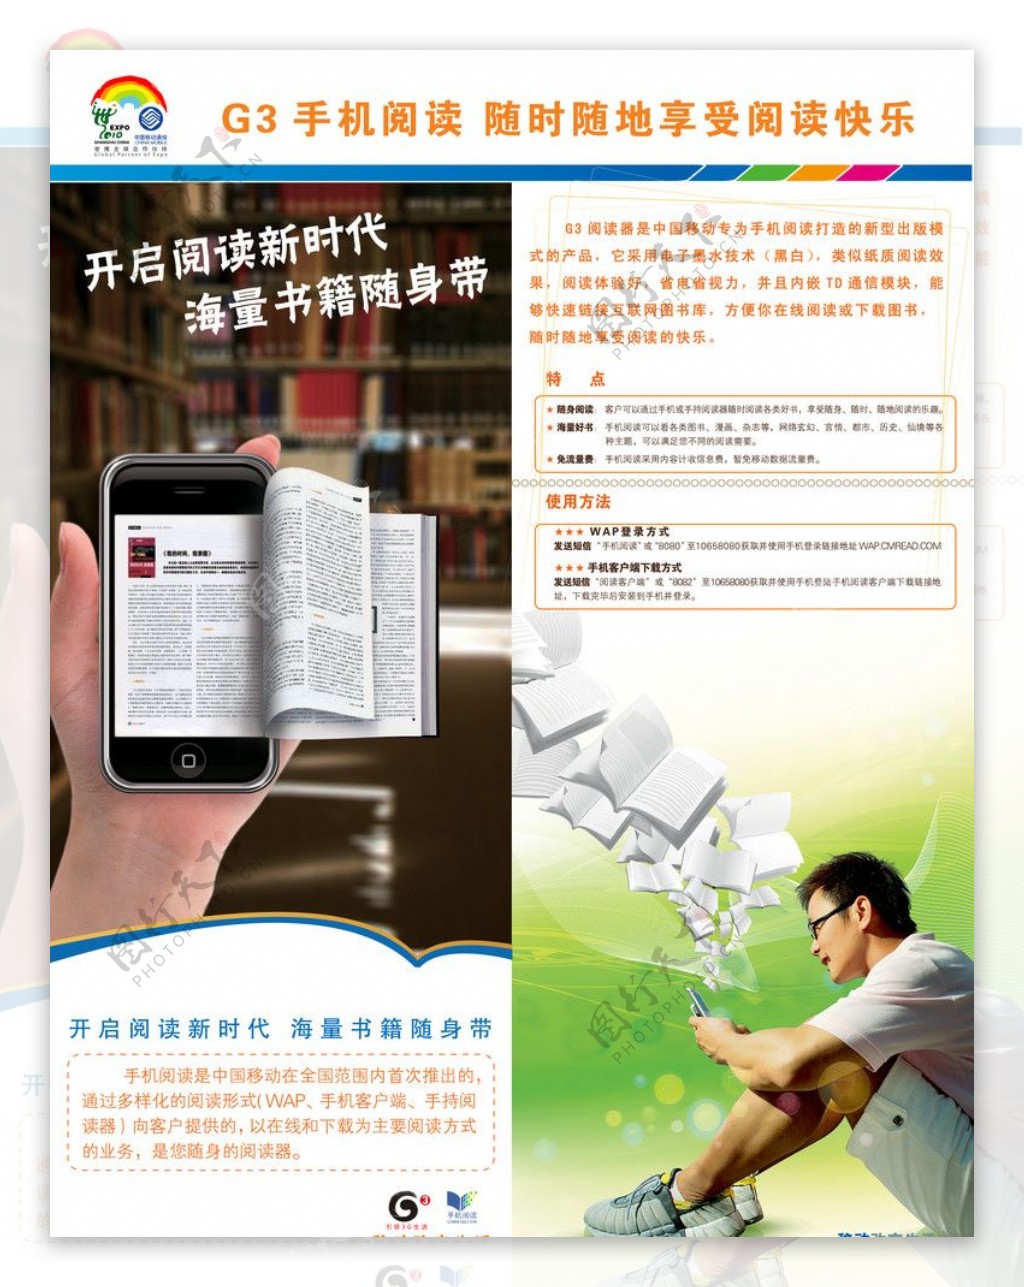 G3手机阅读随时随地享受阅读快乐展板图片